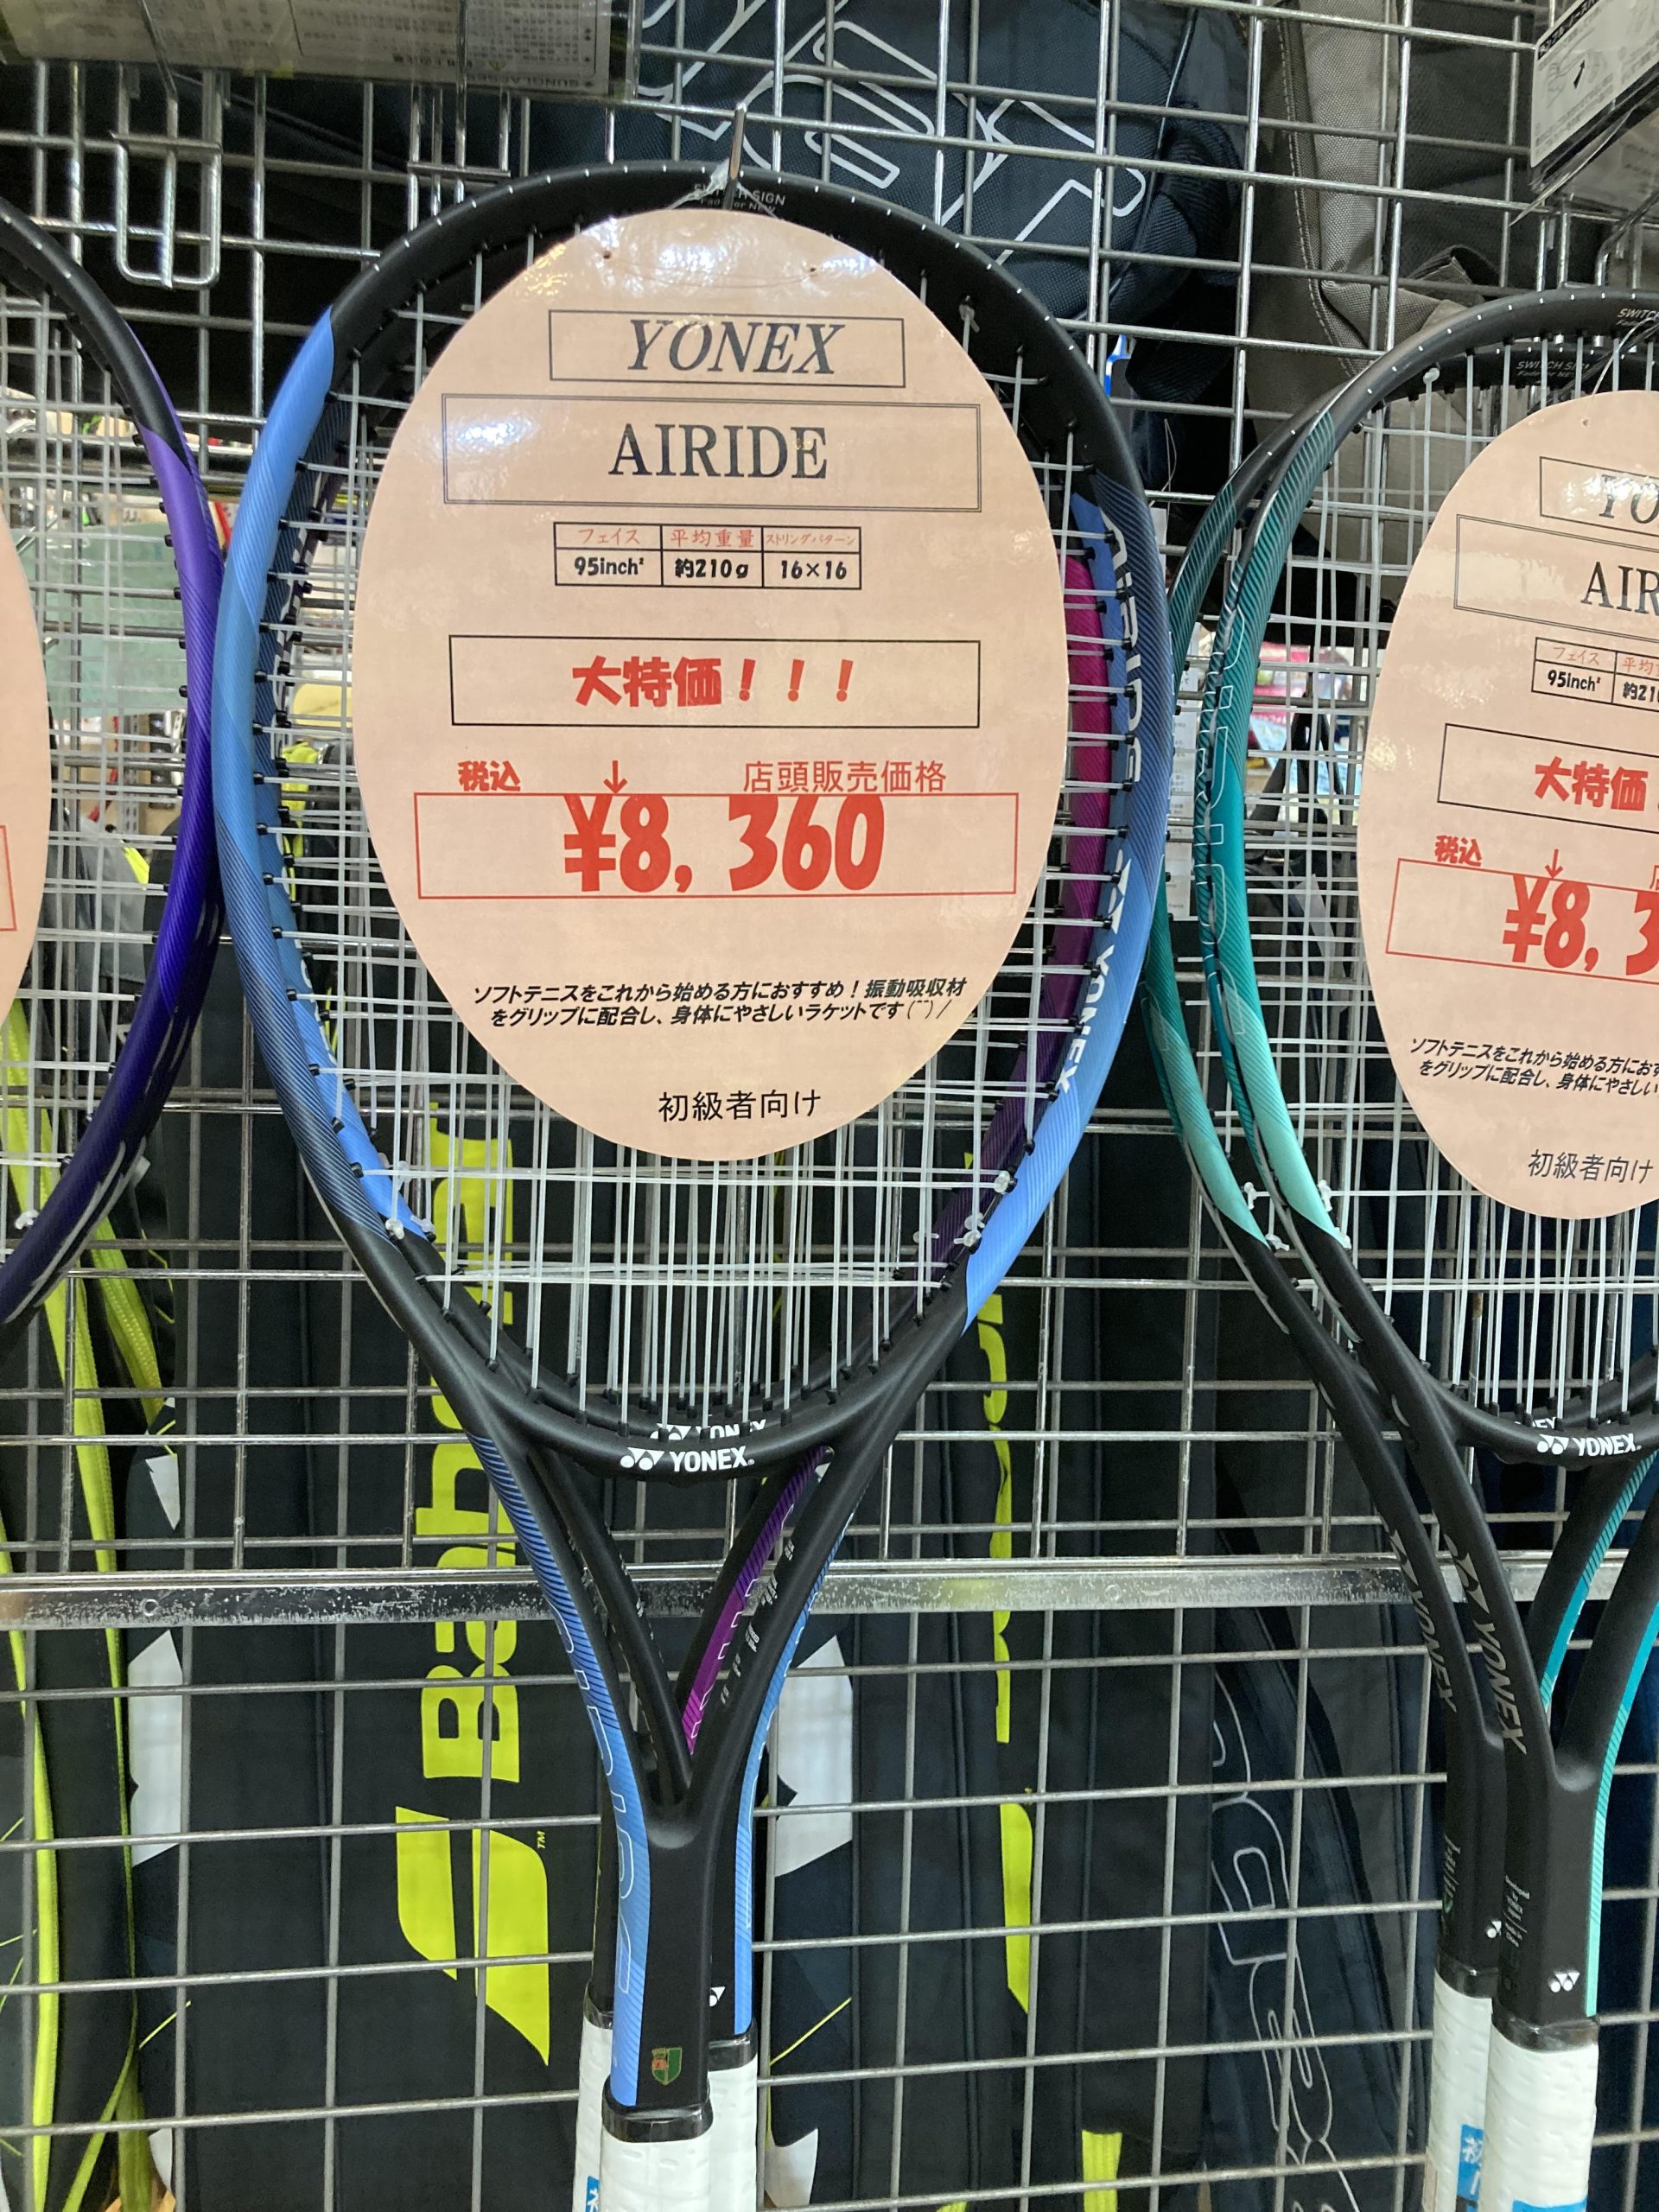 軟式テニス・ソフトテニス入門ラケット販売中!